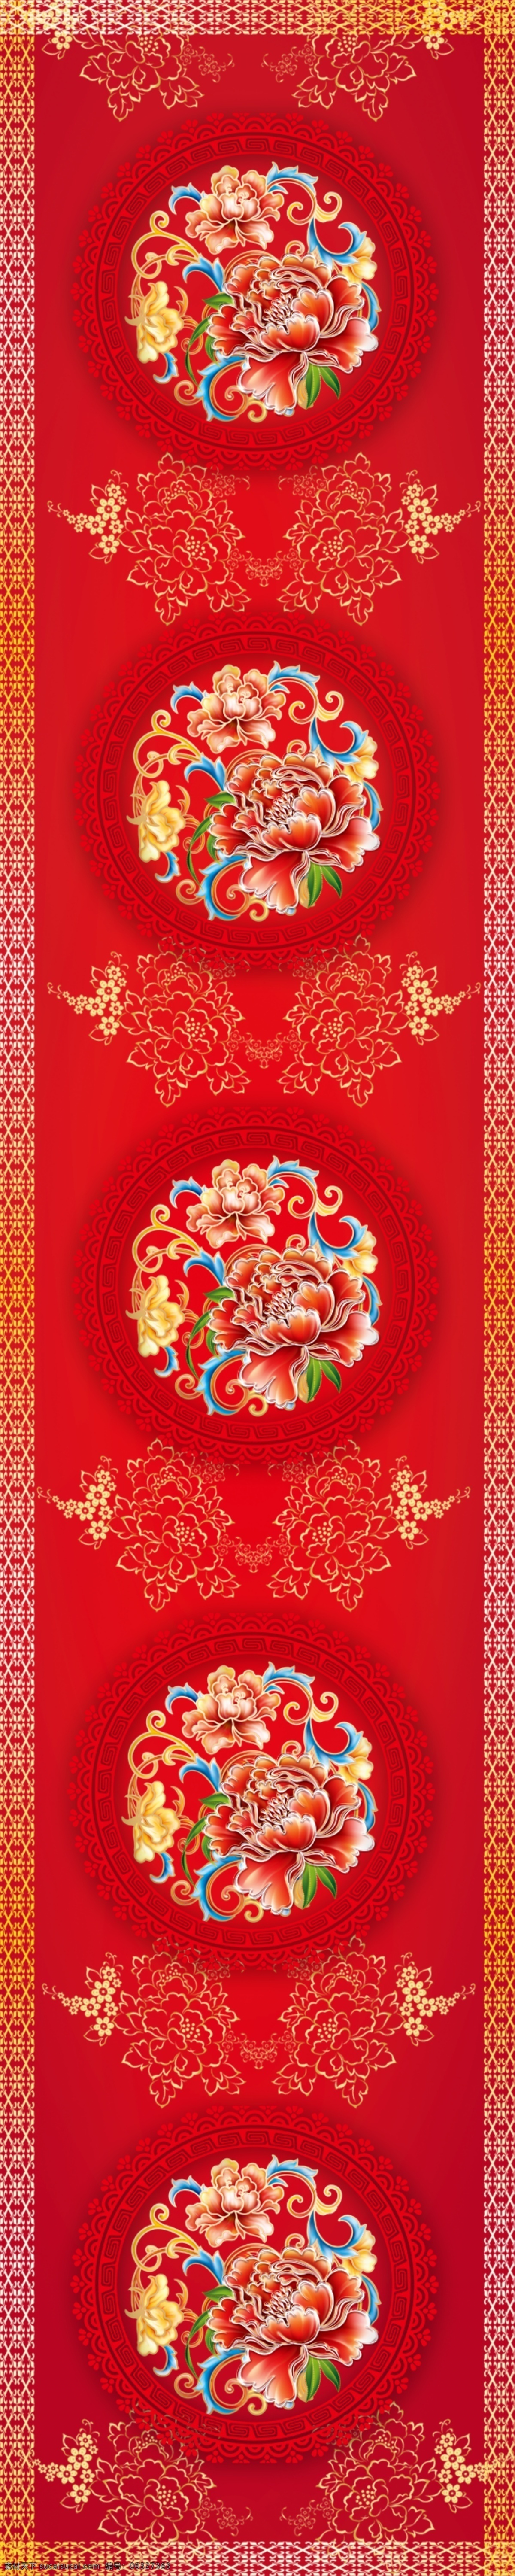 红色 牡丹 创意 地毯 红色地毯 红色婚礼 边框 底纹 婚礼logo